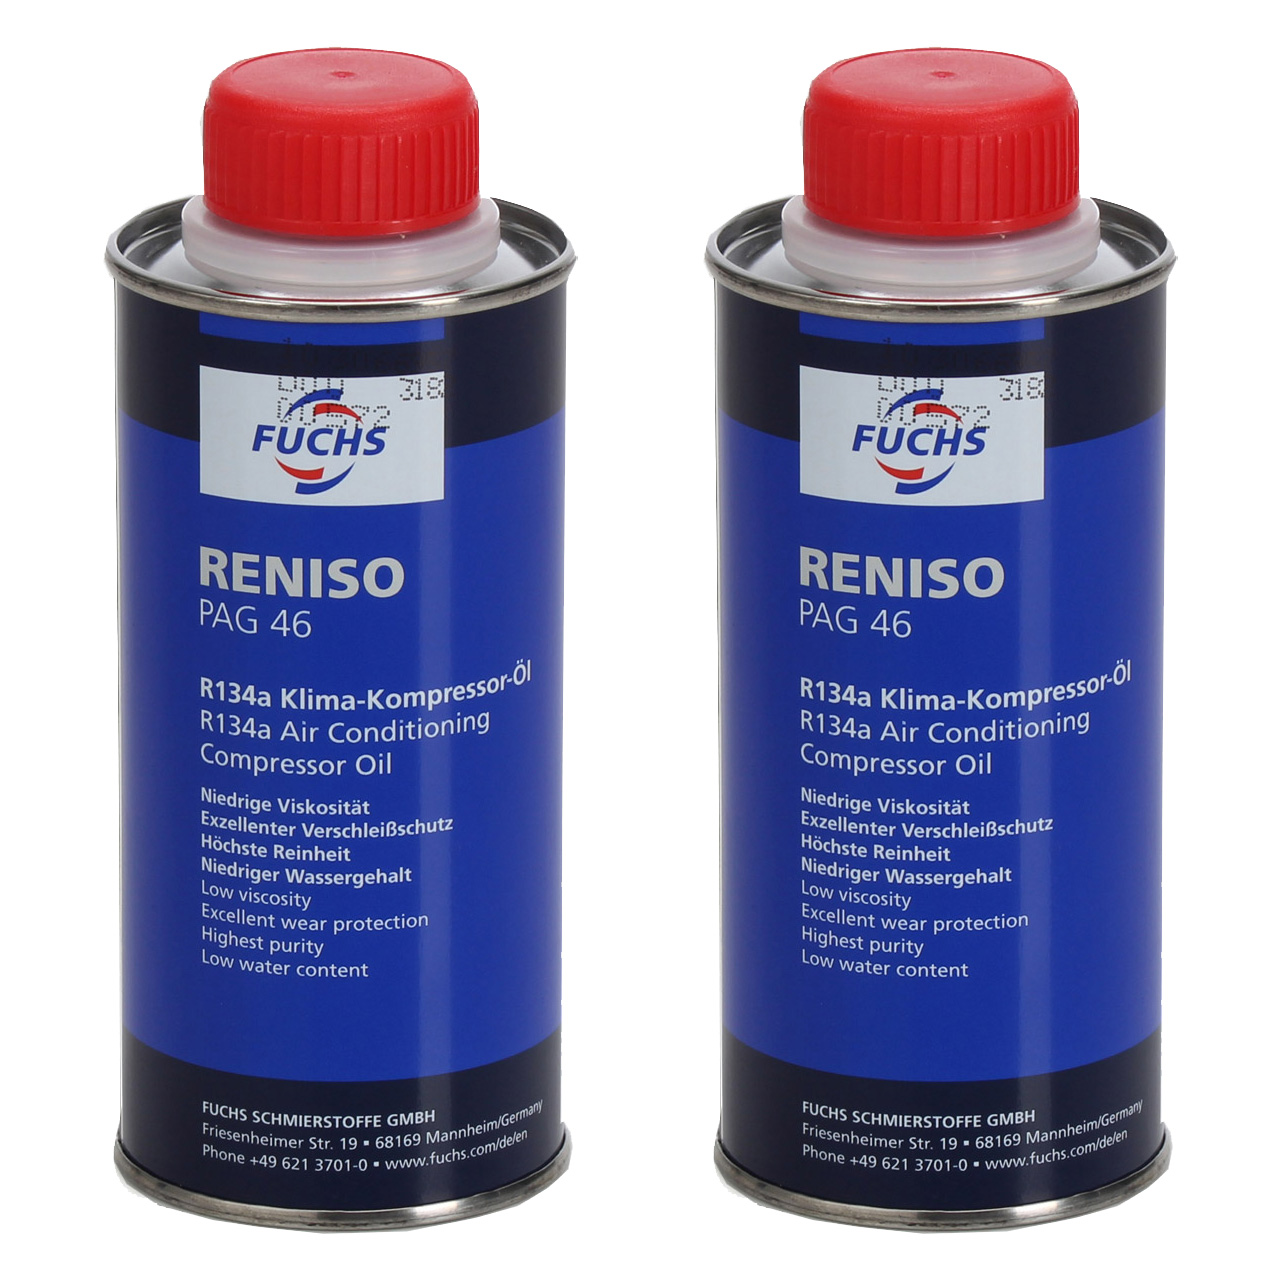 2x 250ml FUCHS RENISO PAG 46 R134a Kompressor Öl Kompressoröl Klimaanlagenöl